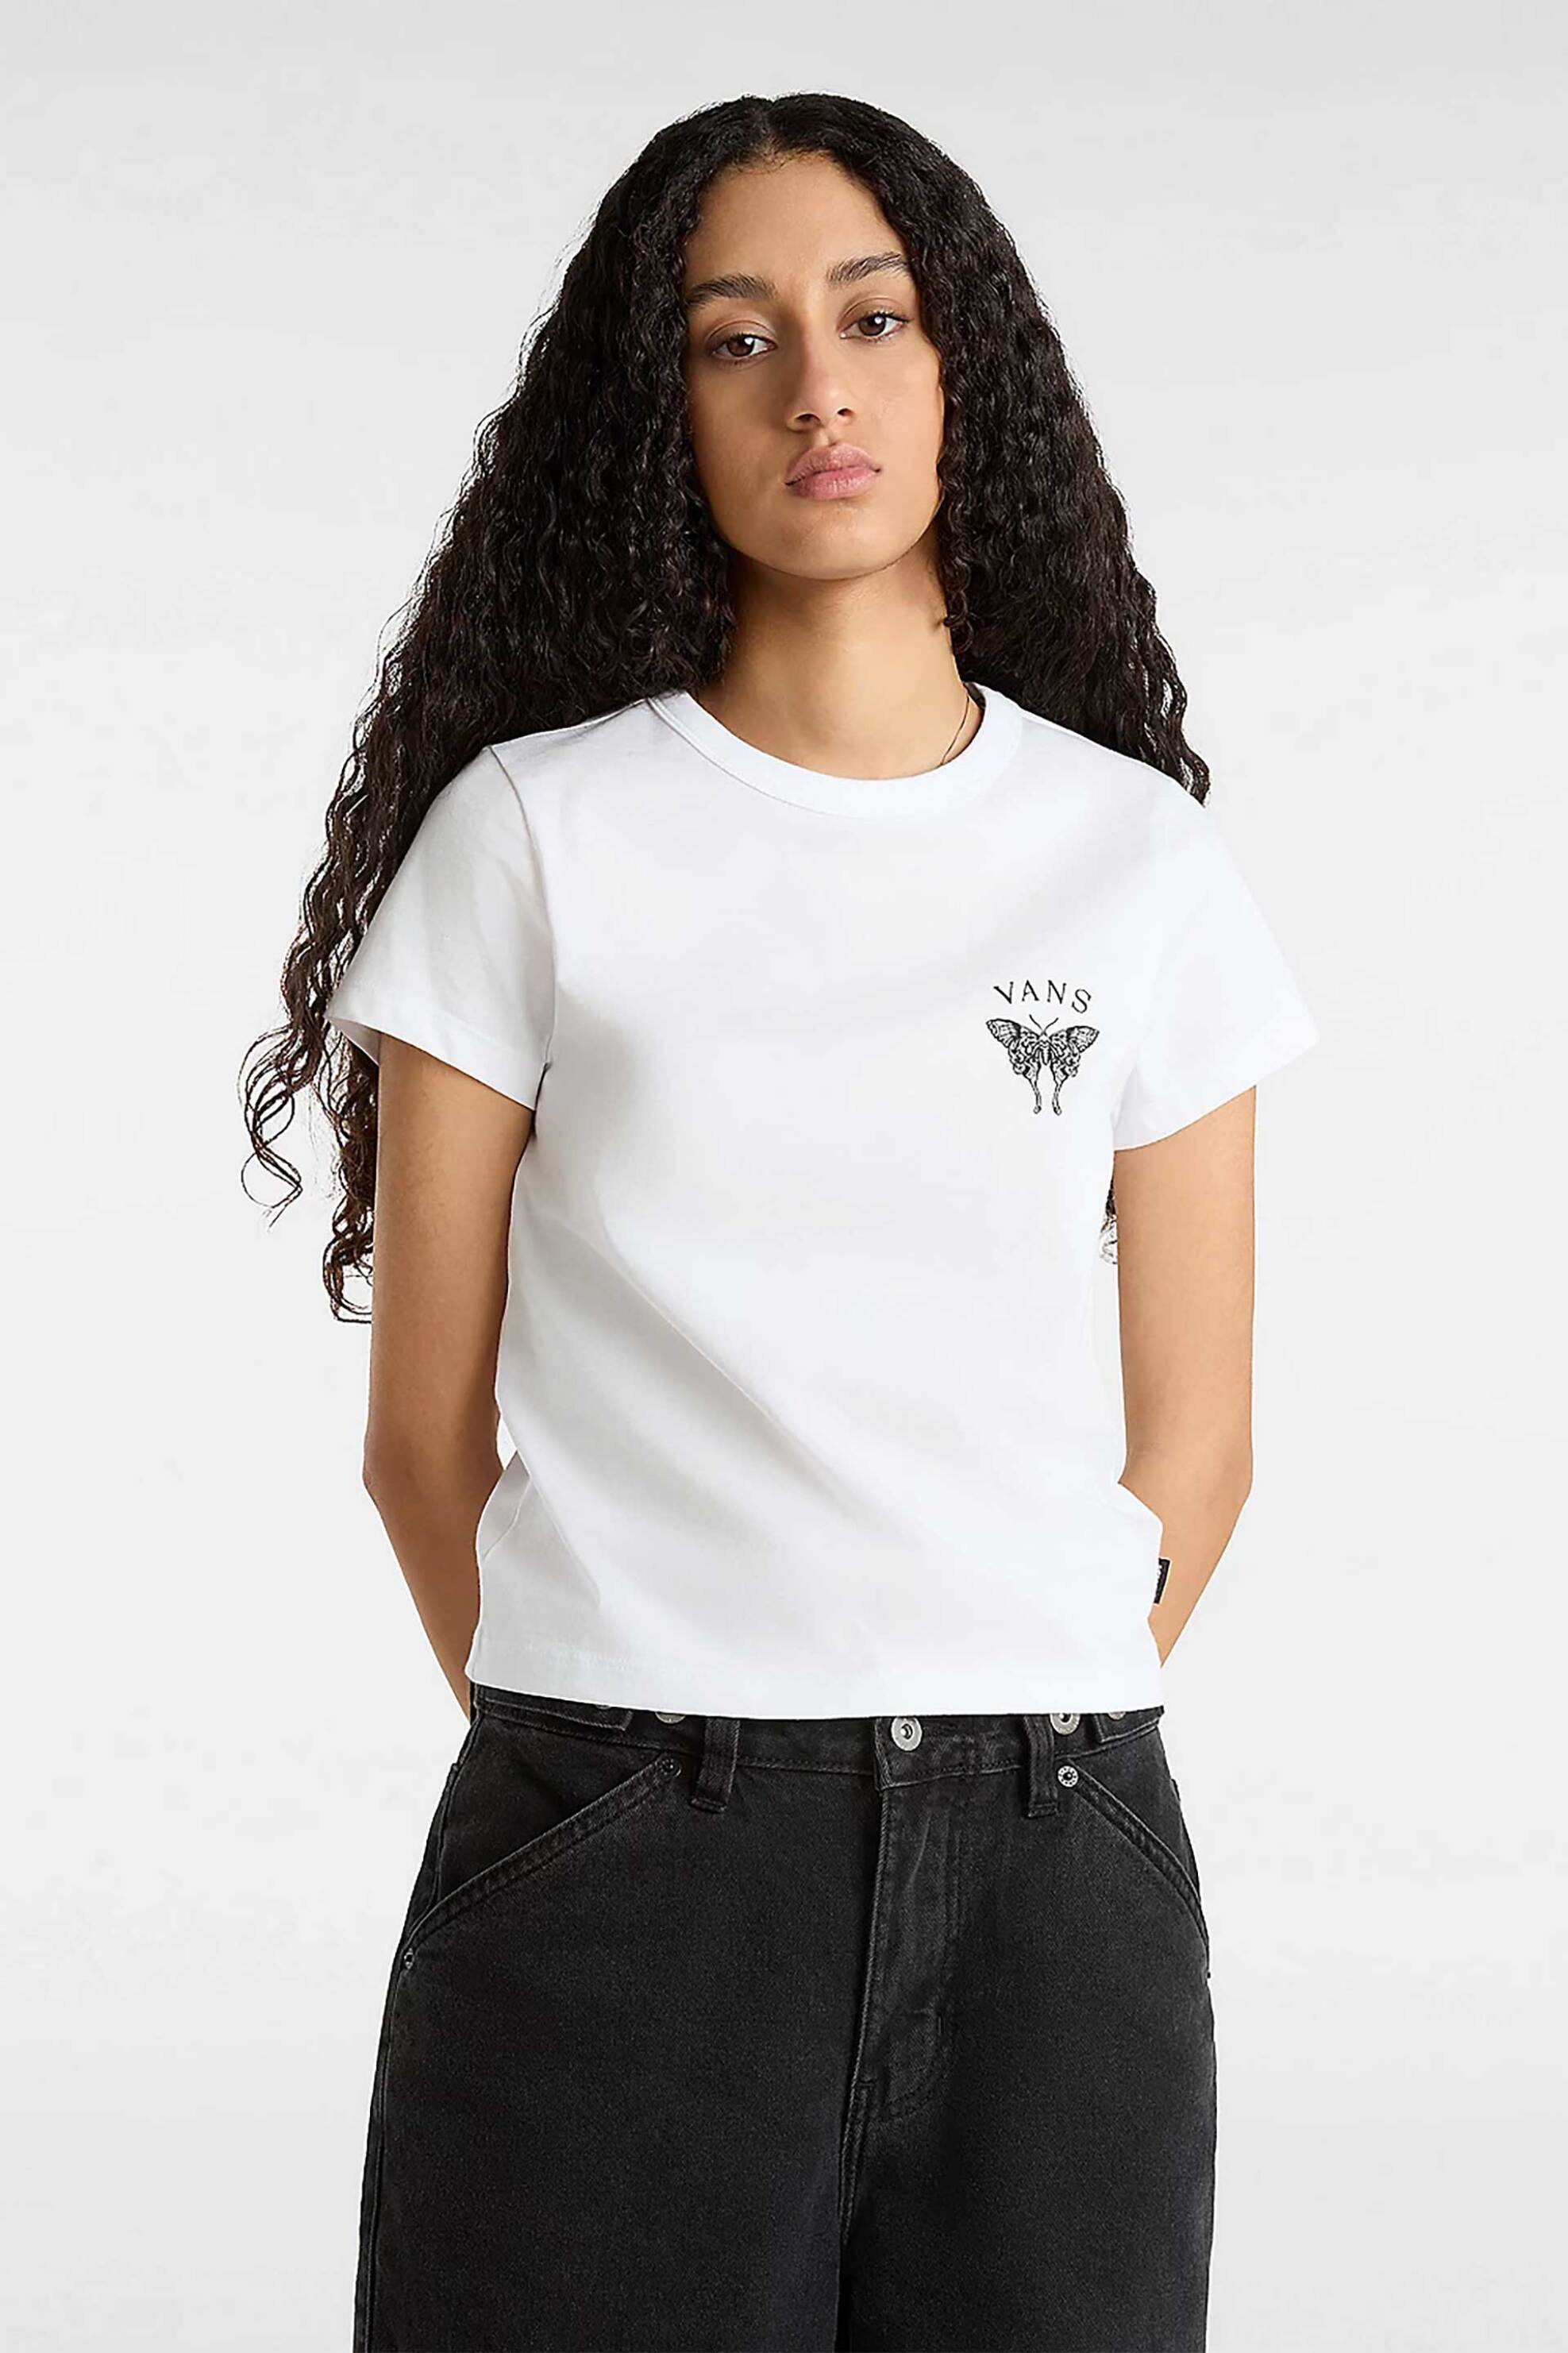 Γυναικεία Ρούχα & Αξεσουάρ > Γυναικεία Ρούχα > Γυναικεία Τοπ > Γυναικεία T-Shirts Vans γυναικείο T-shirt με print "Catchers Club" - VN000GJ3WHT1 Λευκό